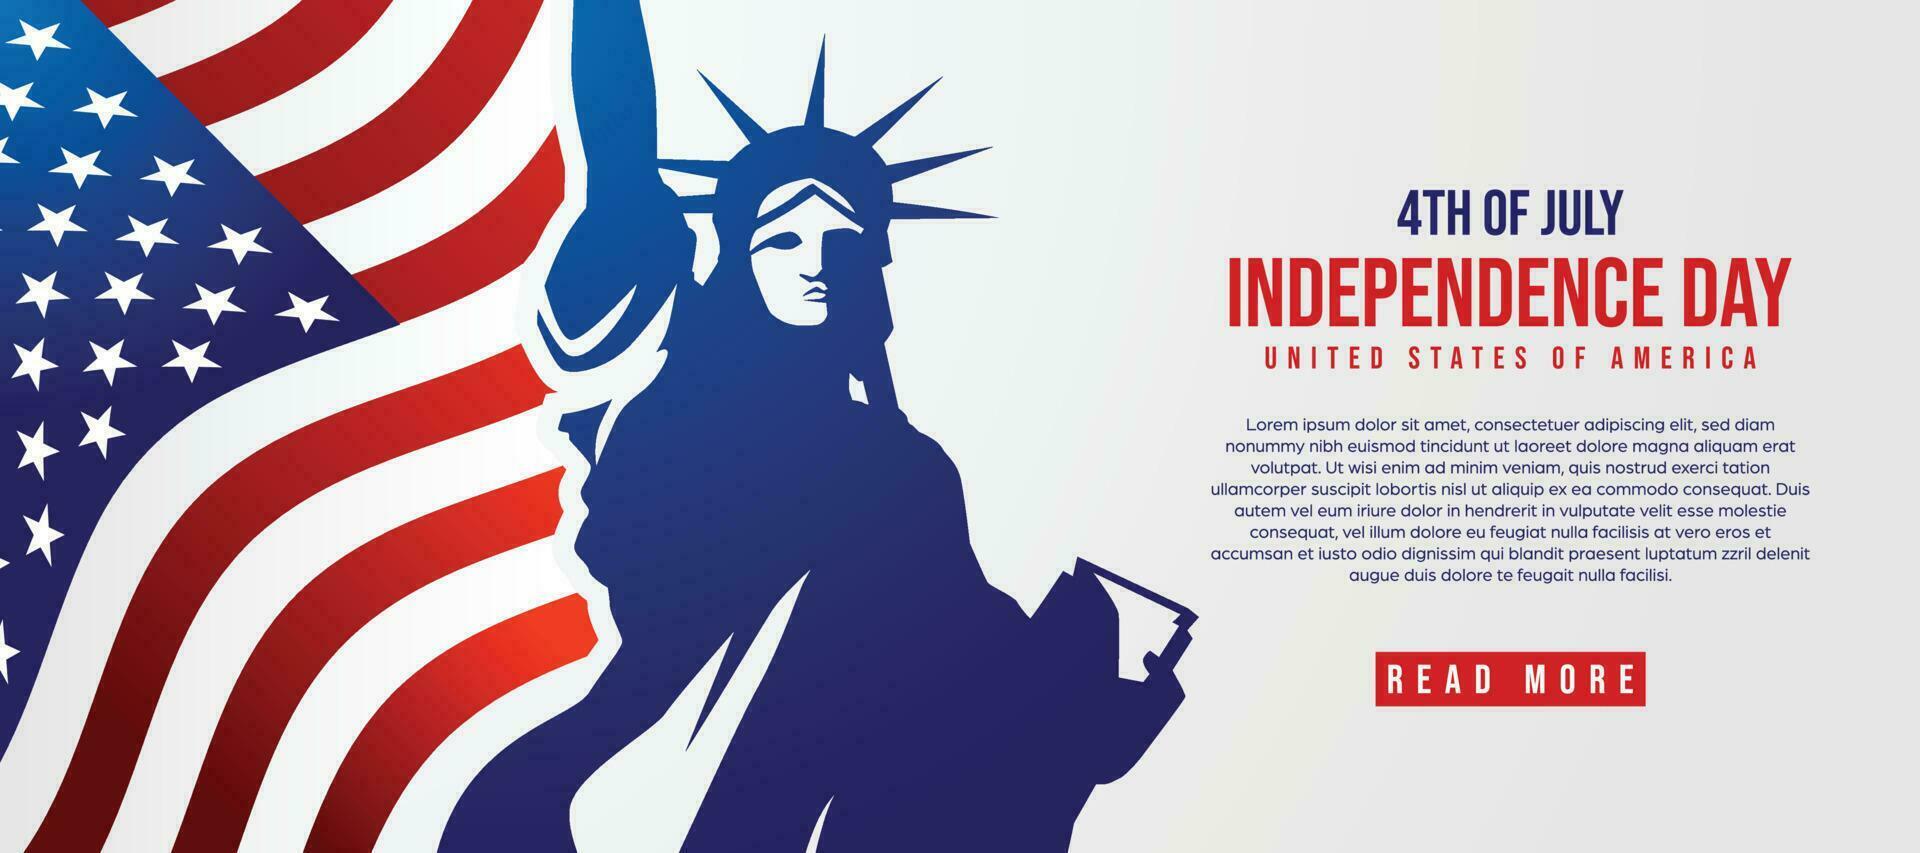 contento independencia día de unido estados de America, 4to de julio vector modelo diseño, America bandera antecedentes